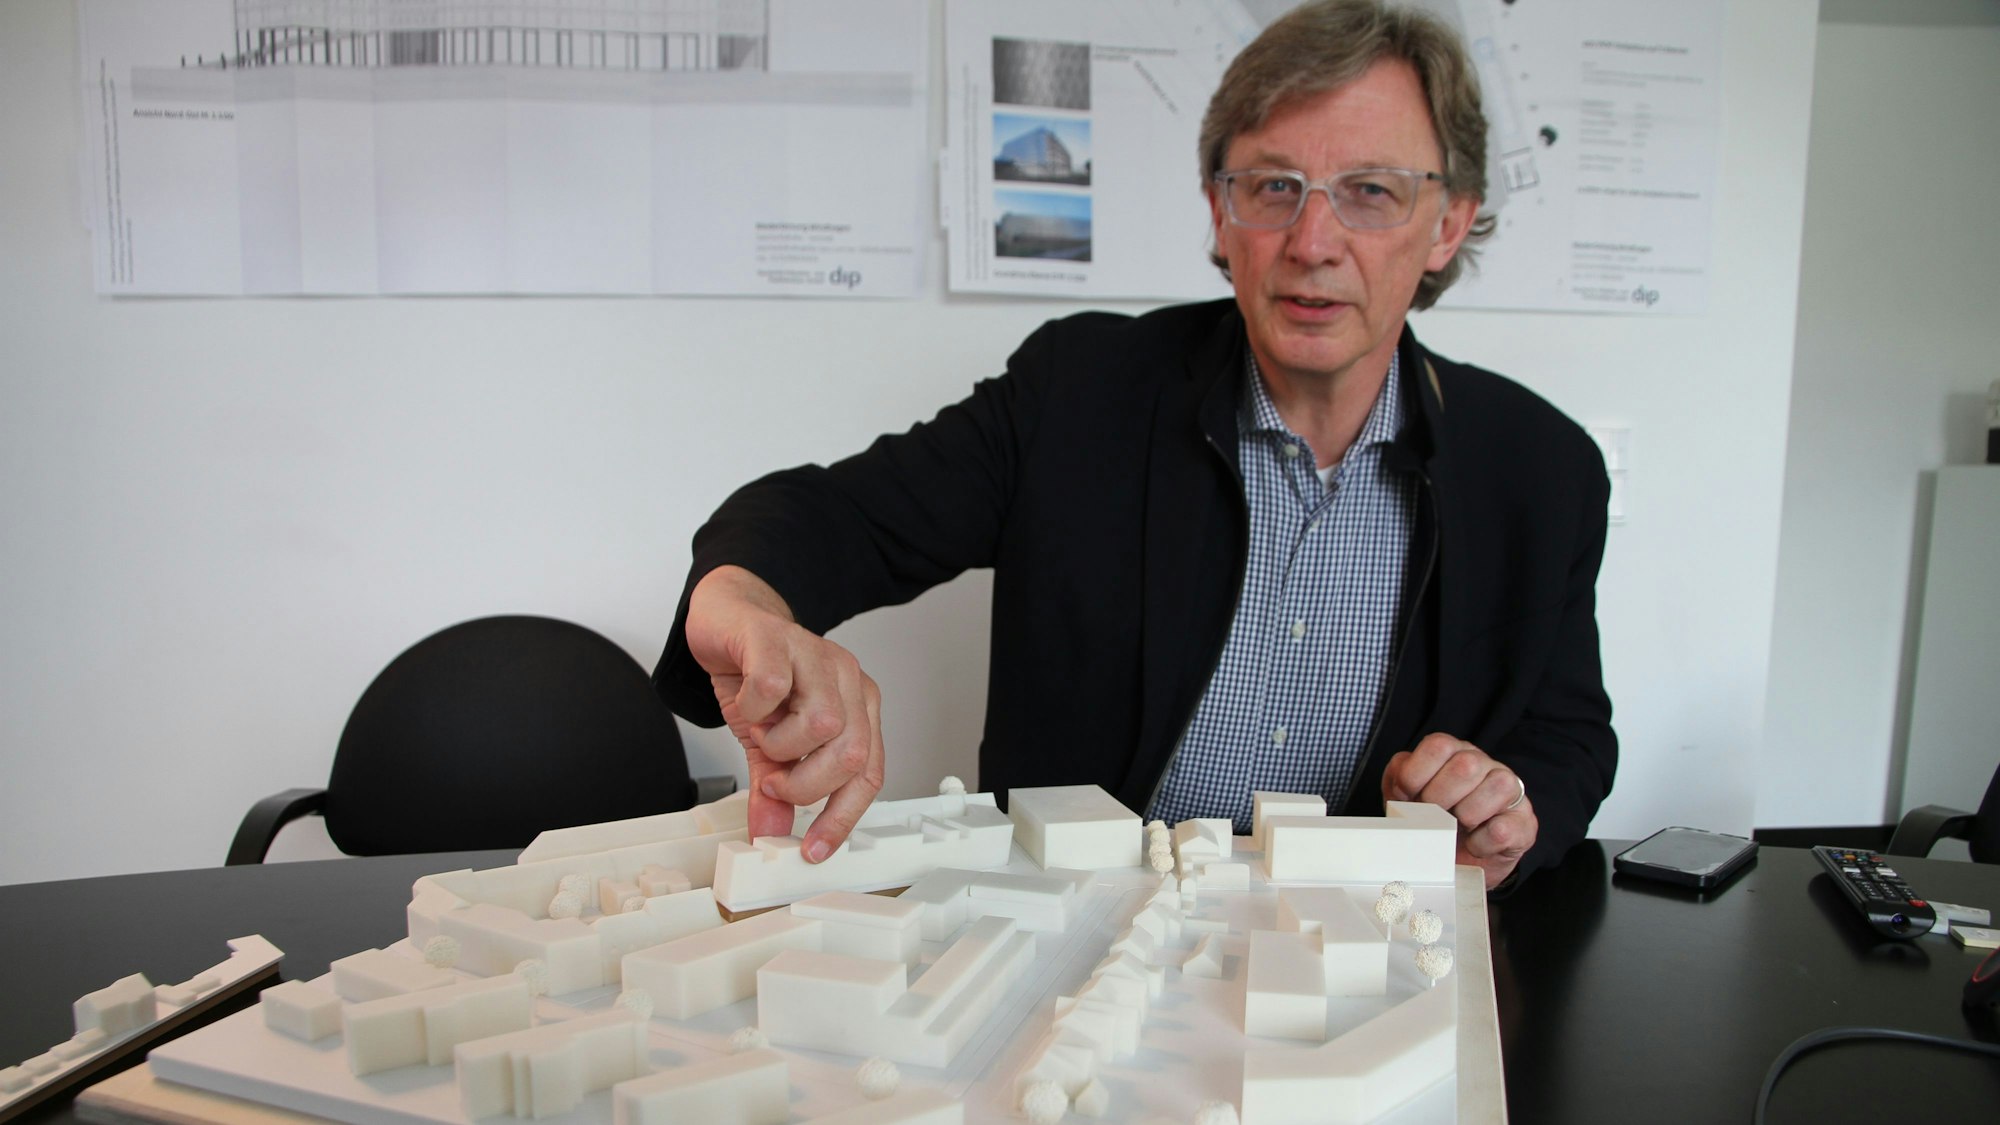 Ein Mann mit einem Architekturmodell für ein Baugebiet